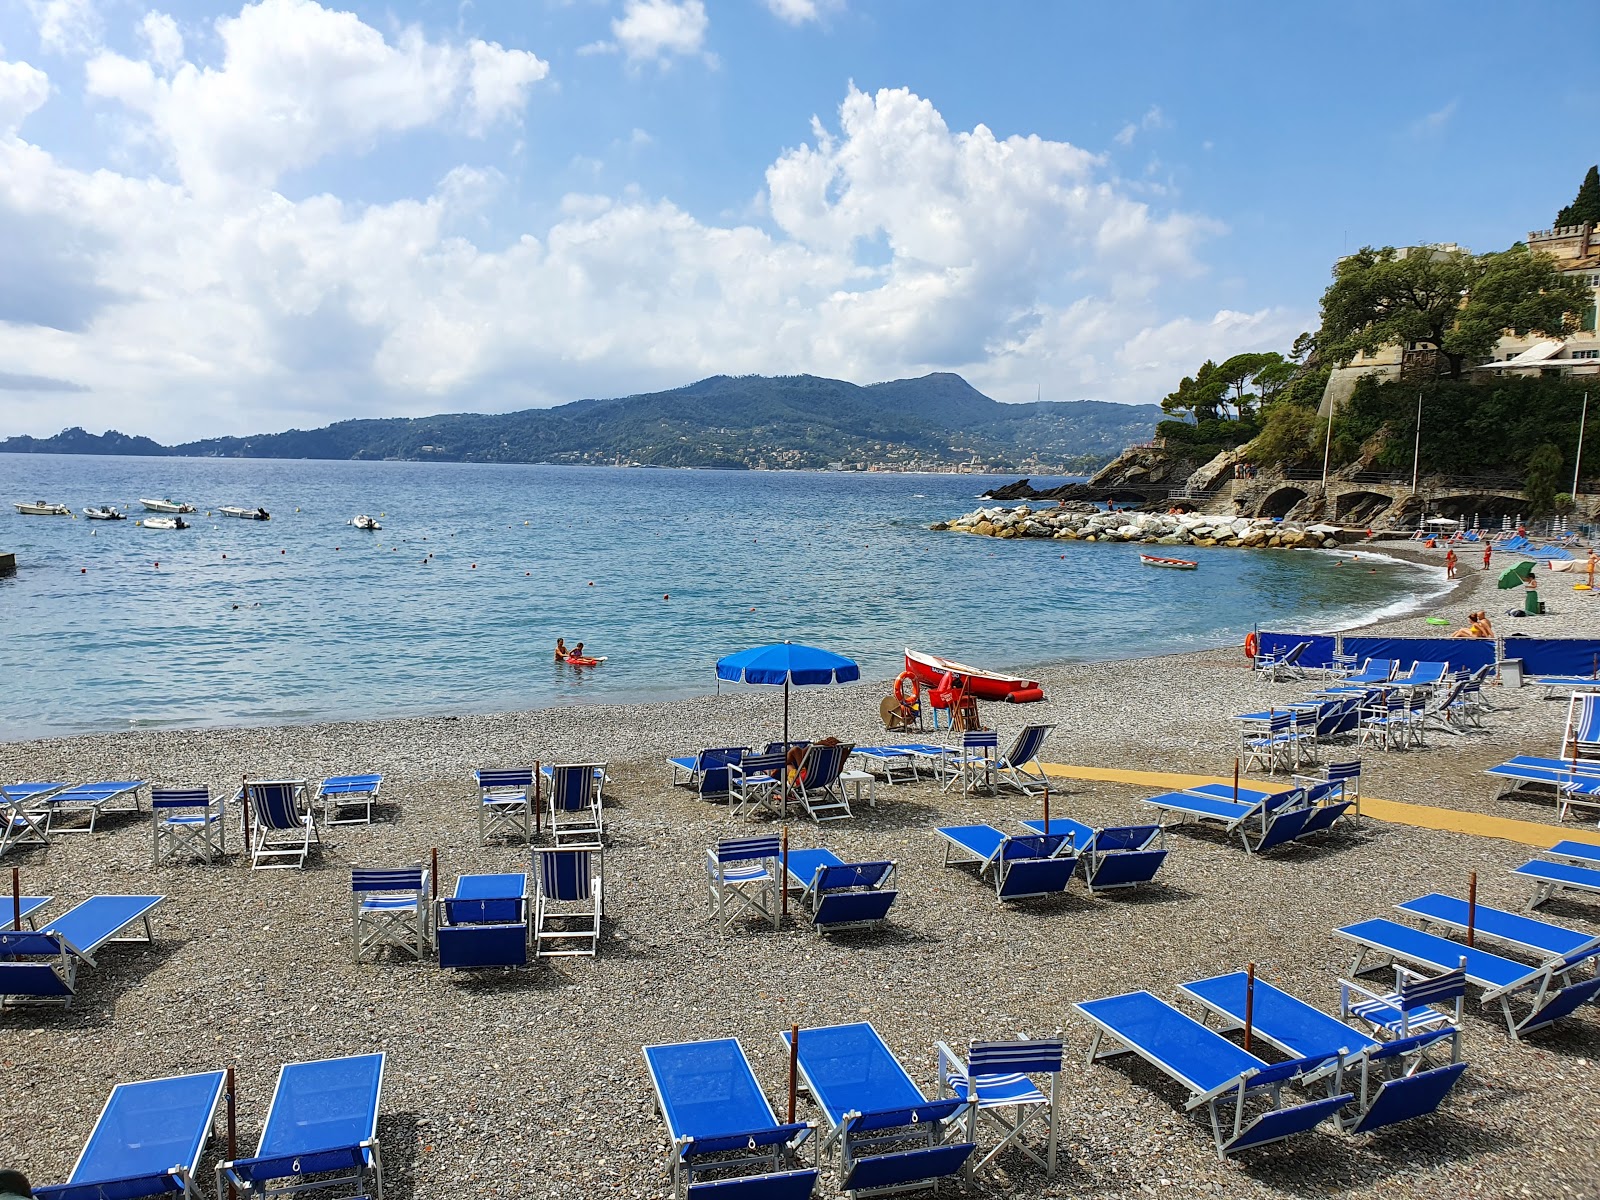 Foto av Spiaggia di Zoagli omgiven av klippor